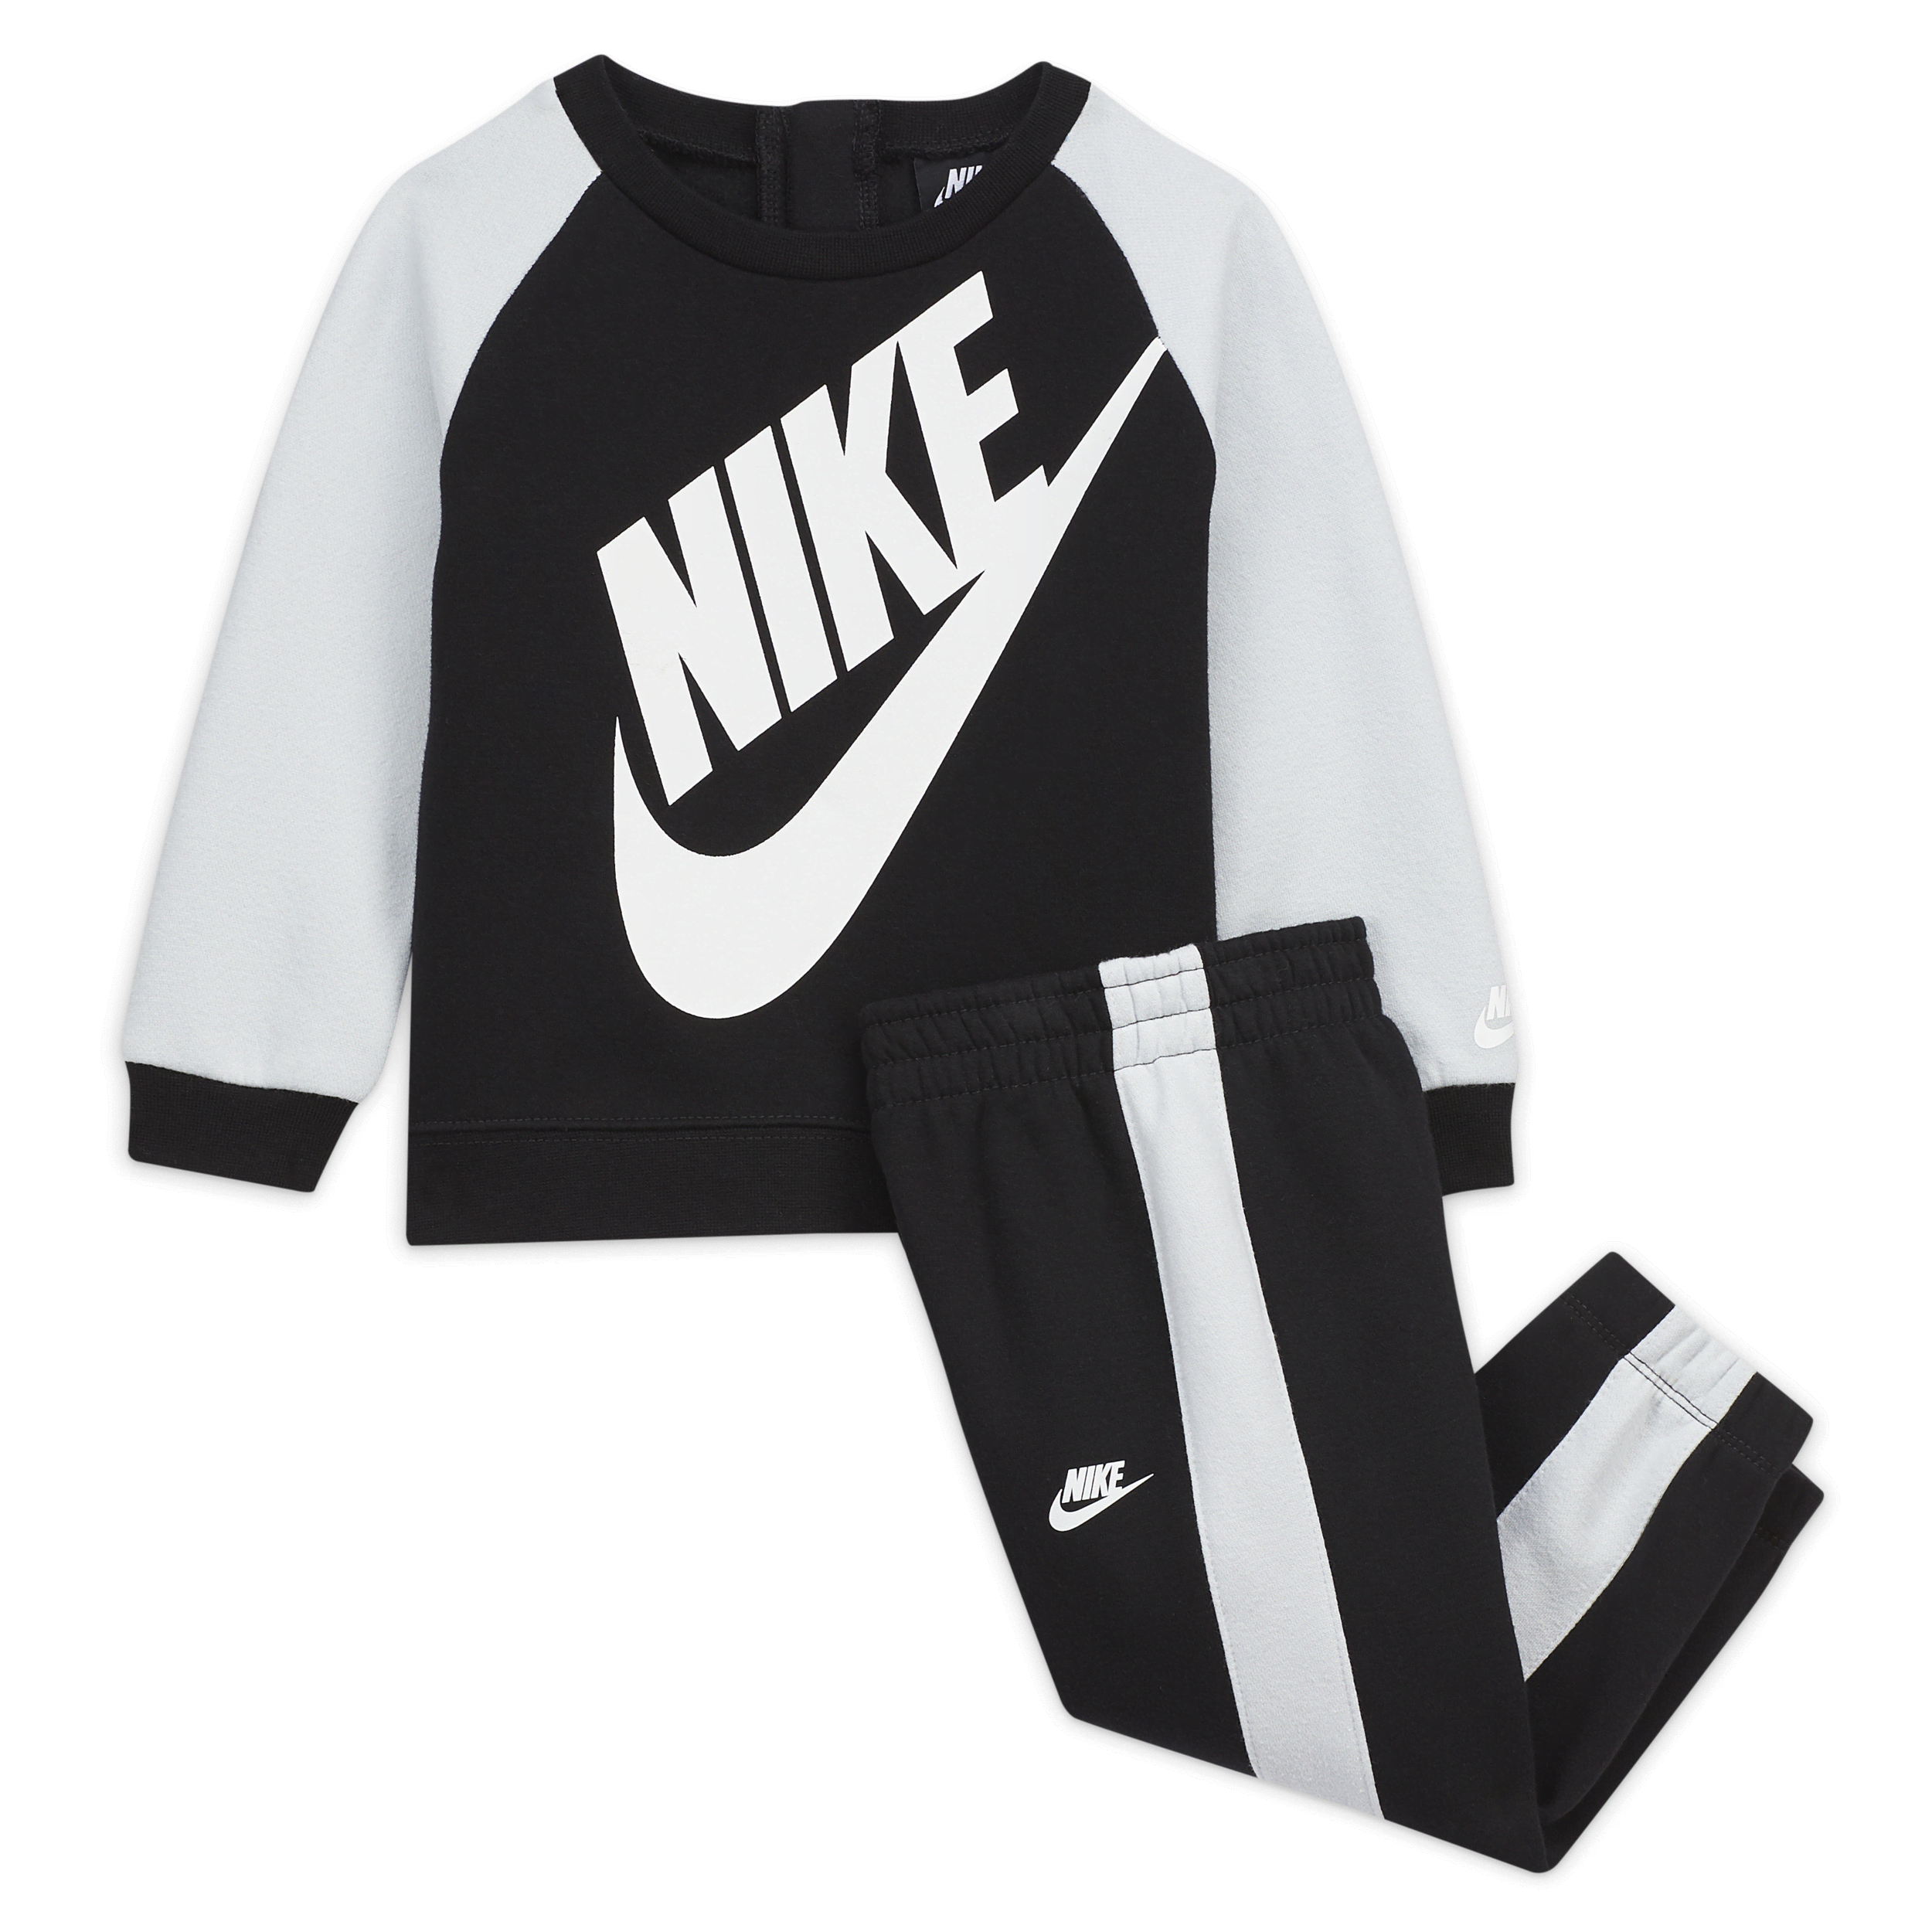 Nike Conjunto de sudadera y pantalón (12-24M) - Bebé - Negro